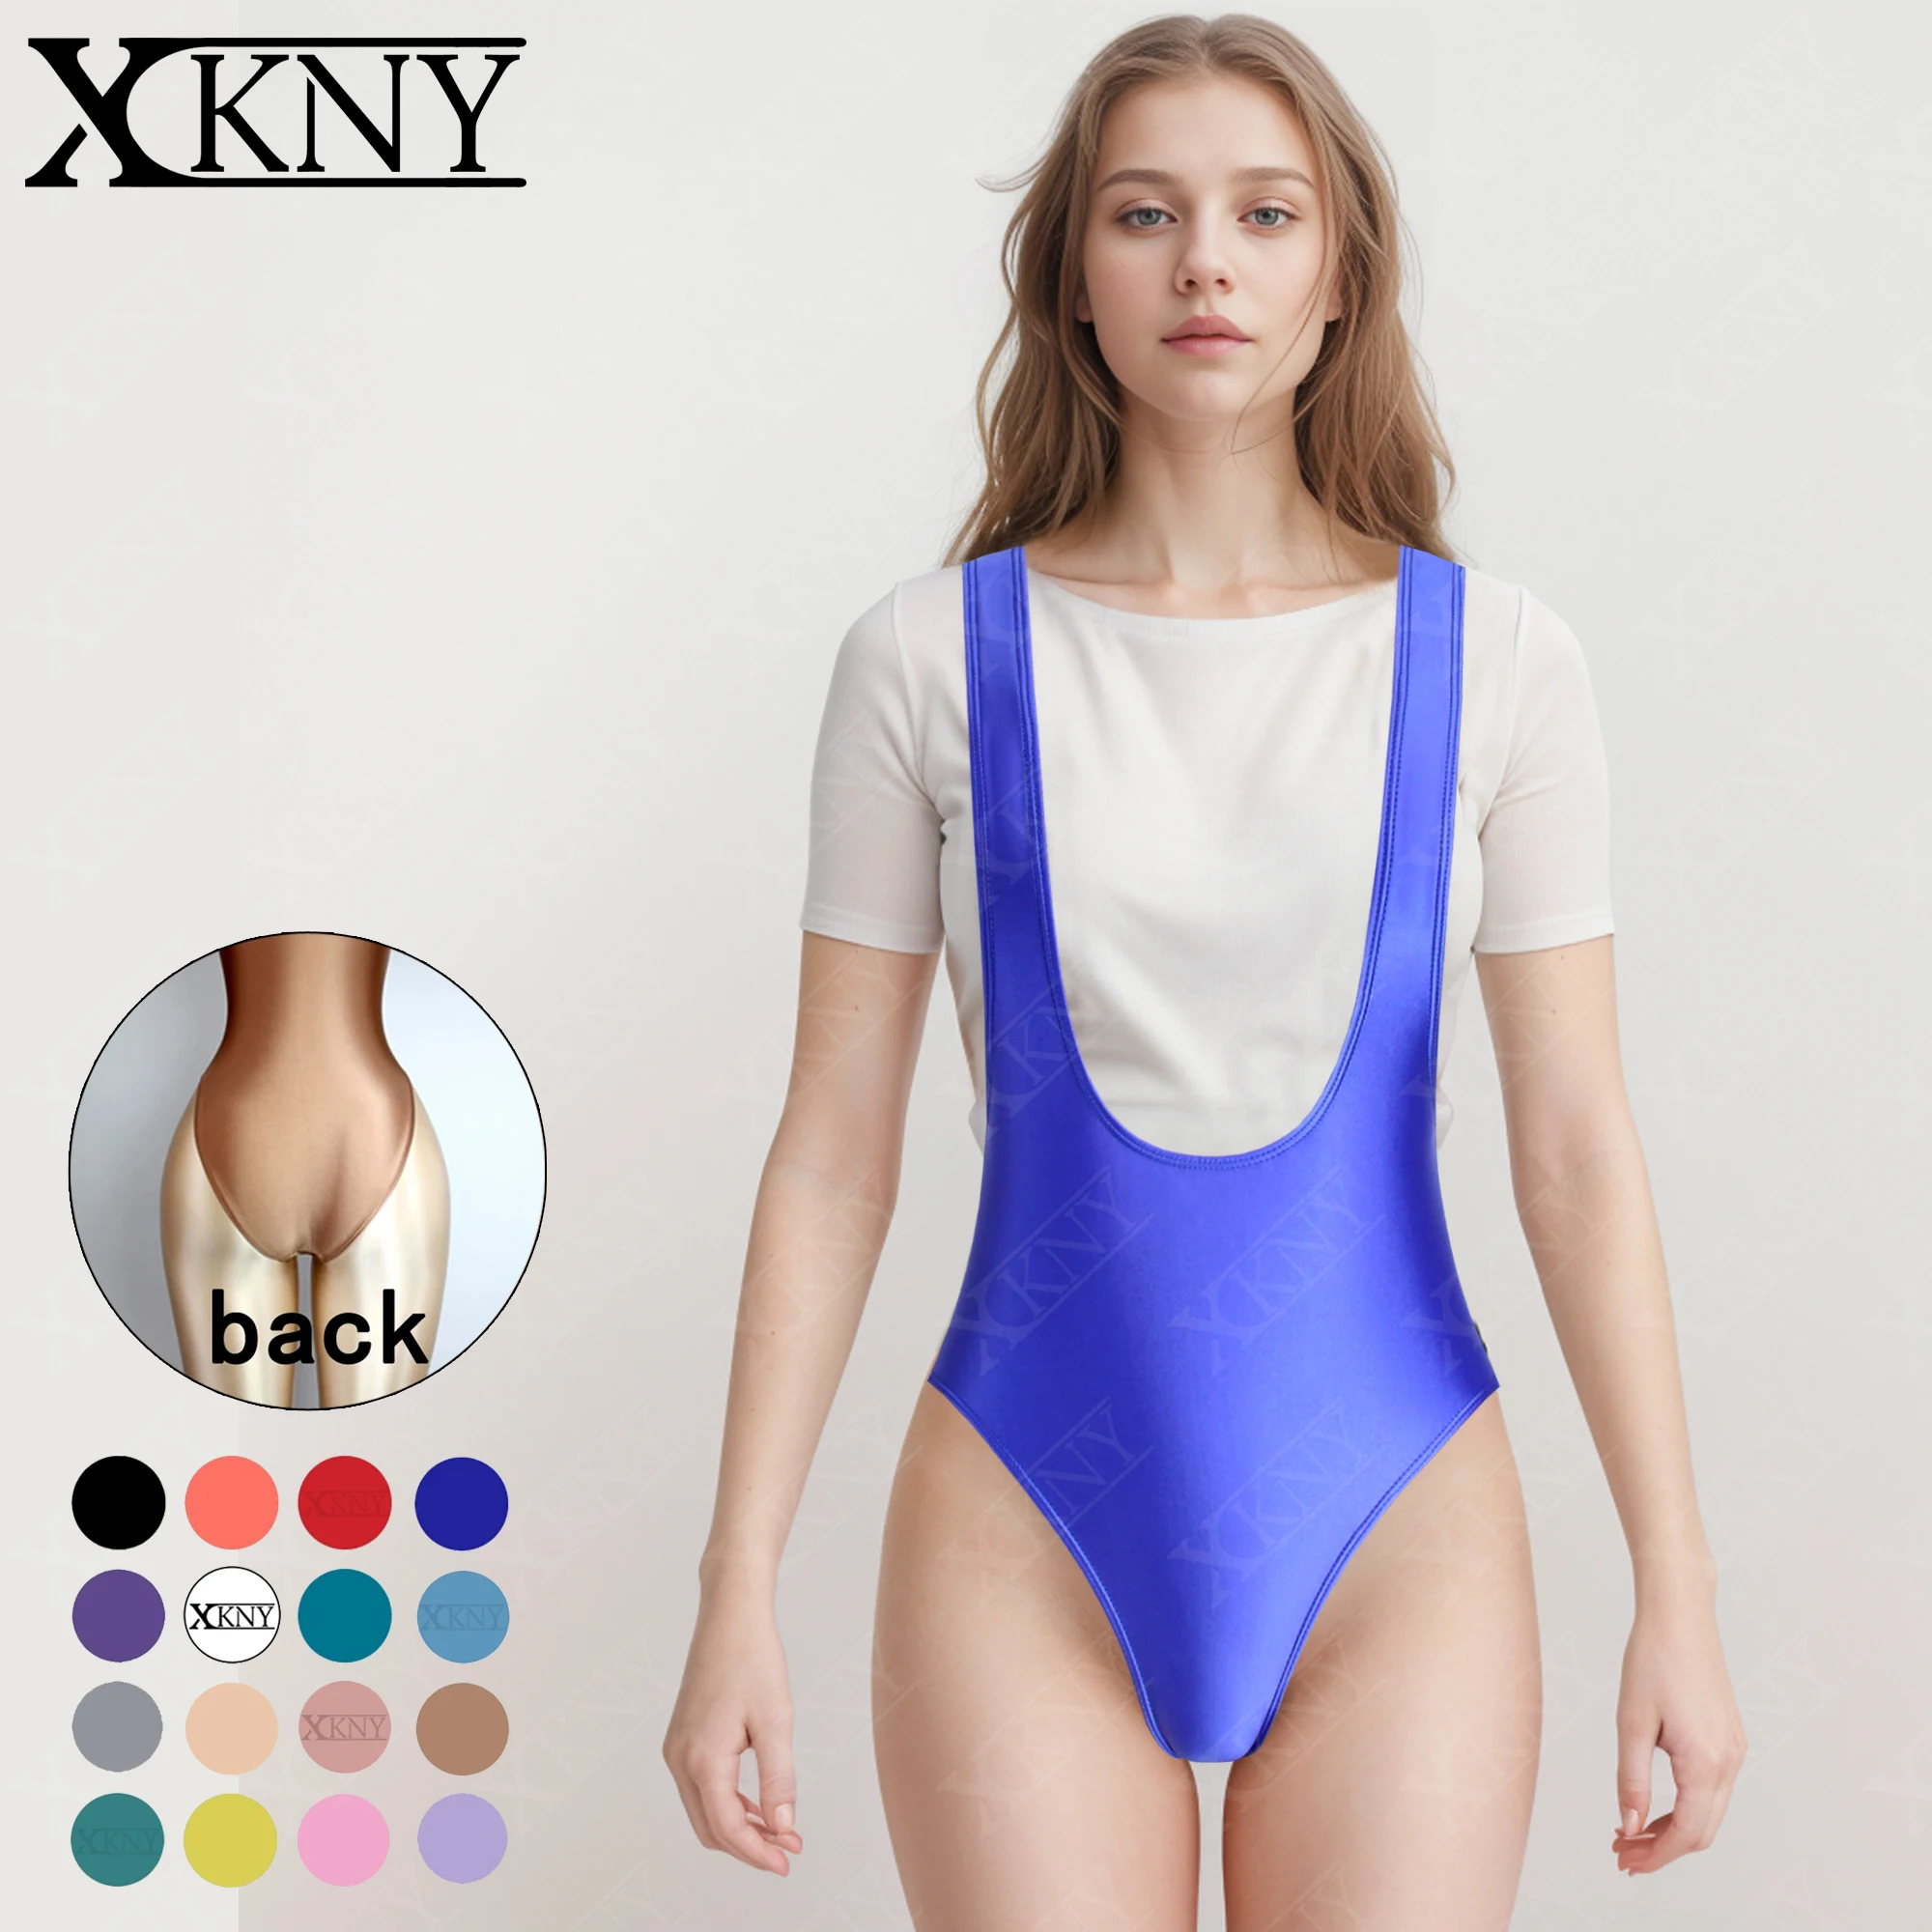 

XCKNY Satin Glossy swimsuit Sexy Fitness clothes silky Bodysuit Beach Women Shiny Vest crotch One-piece Casual sportswear